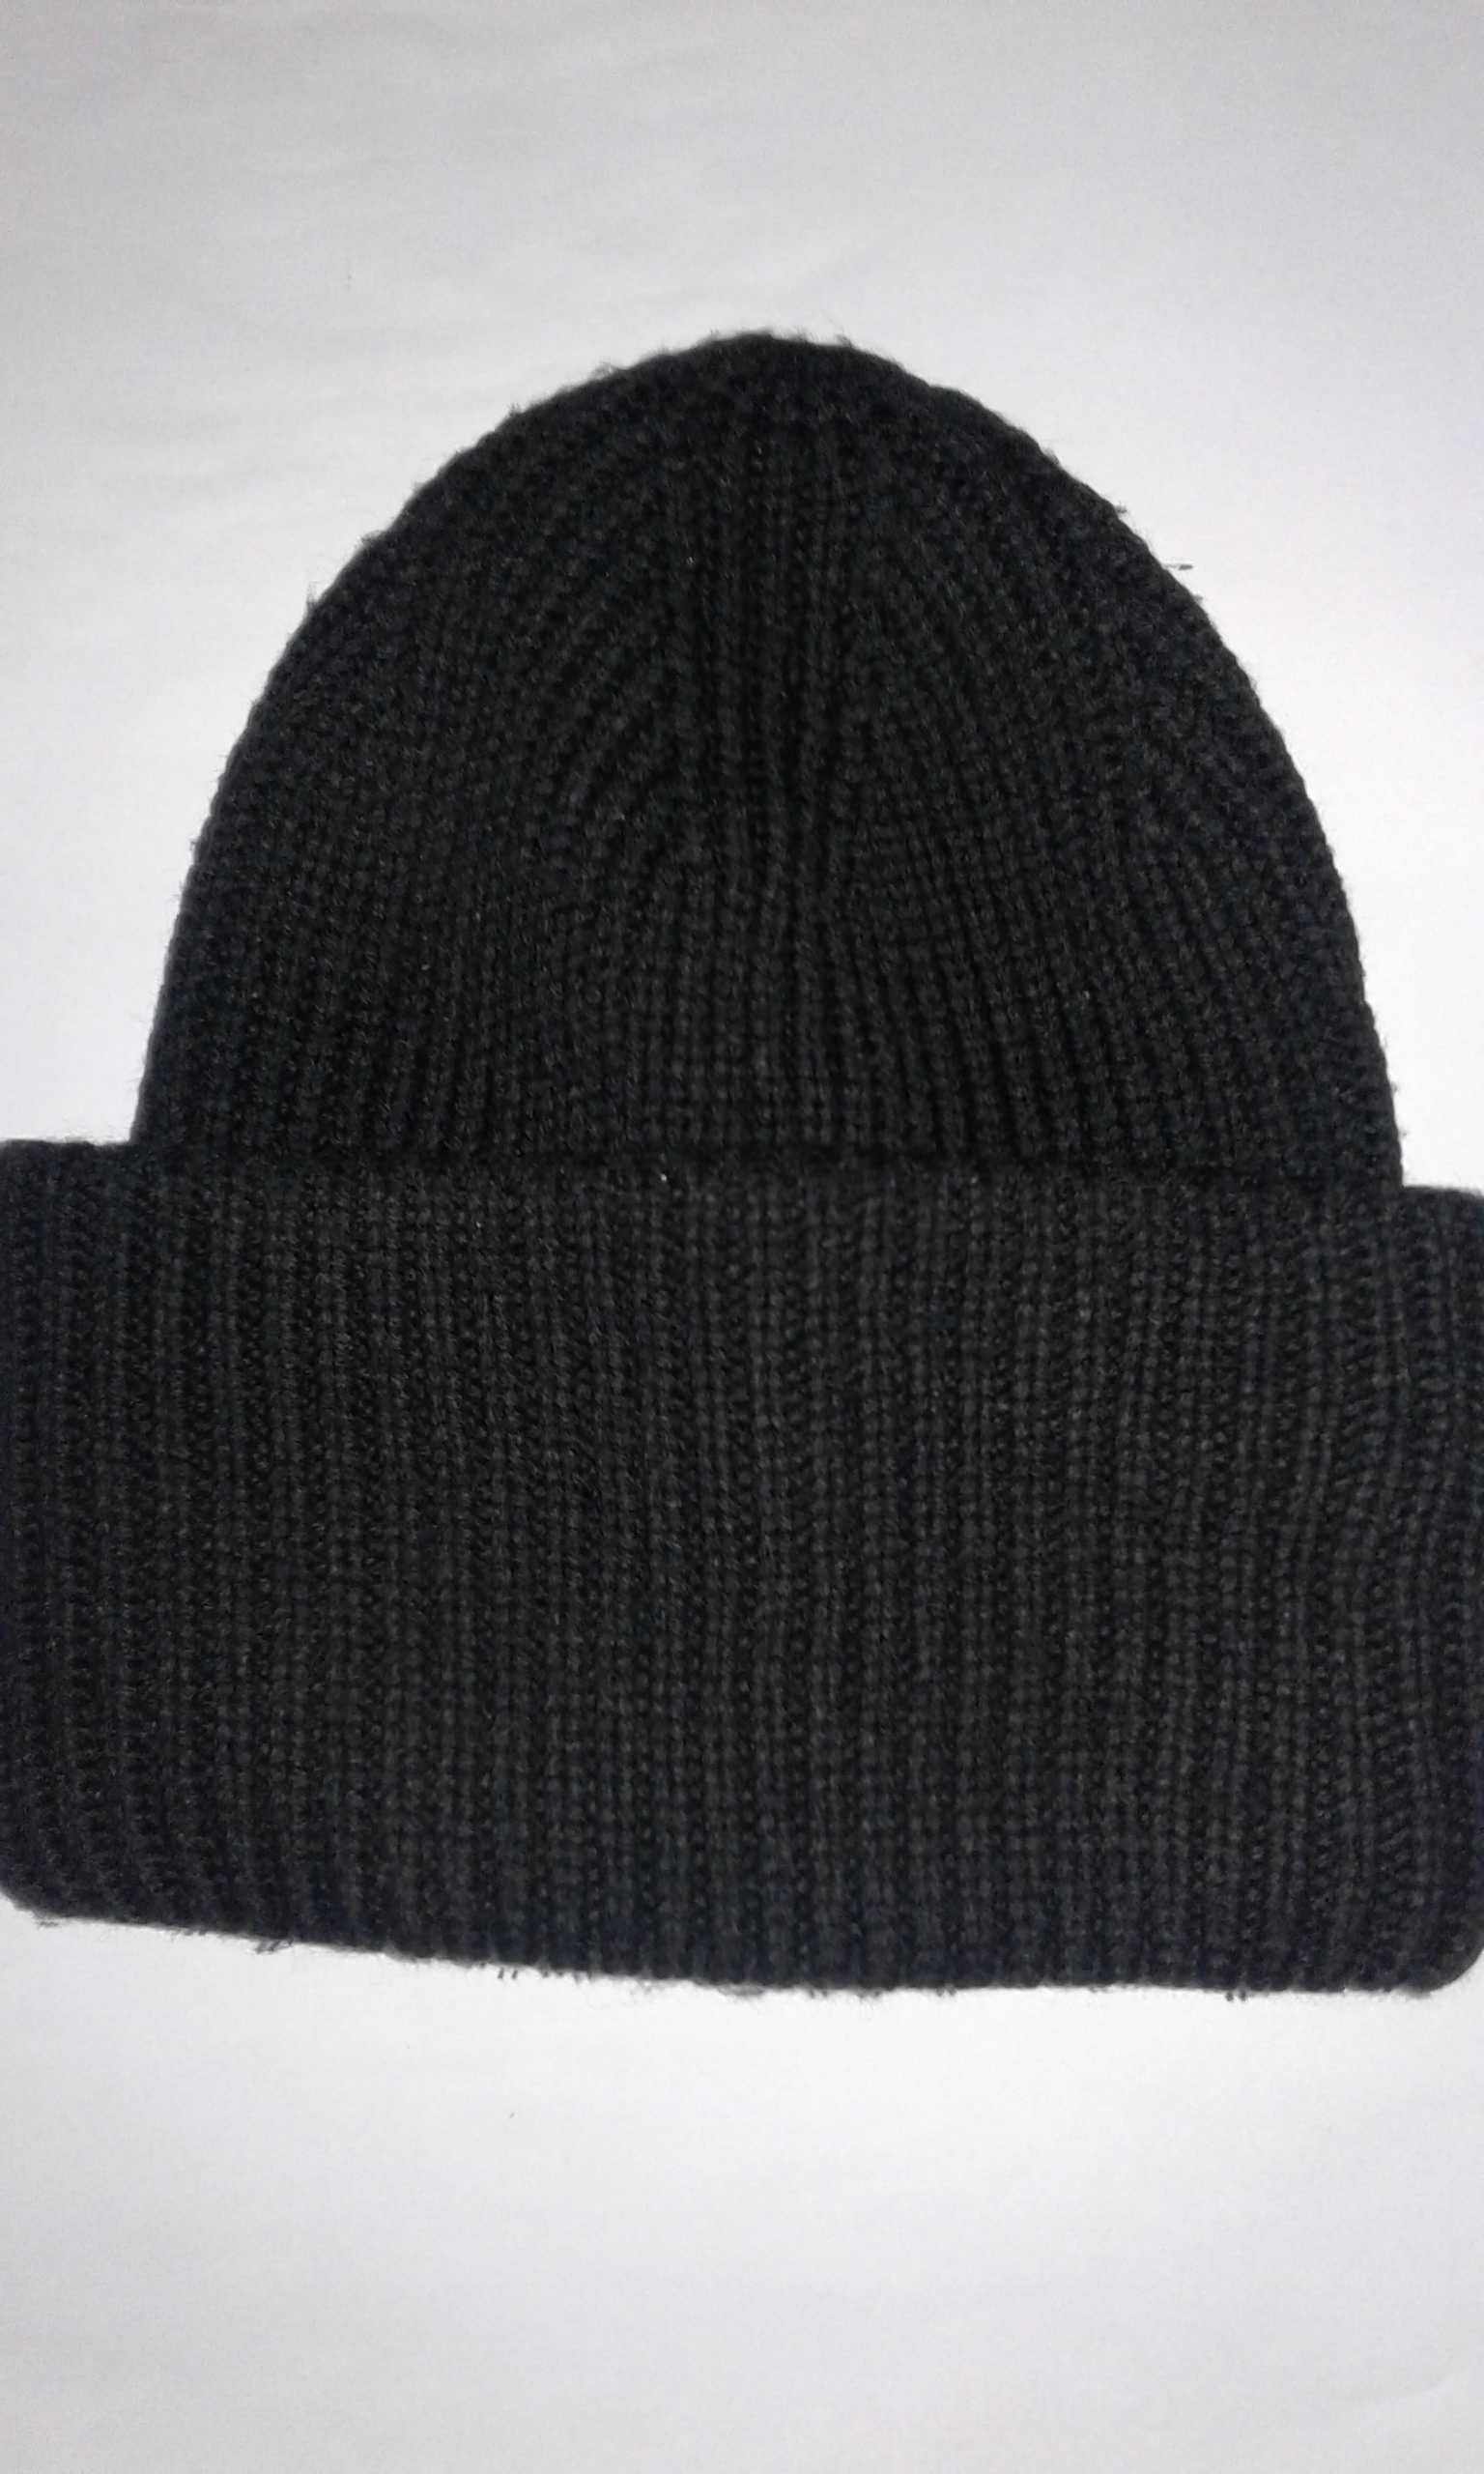 Самая тёплая фирменная зимняя шапка, разворачивается на 3 части.